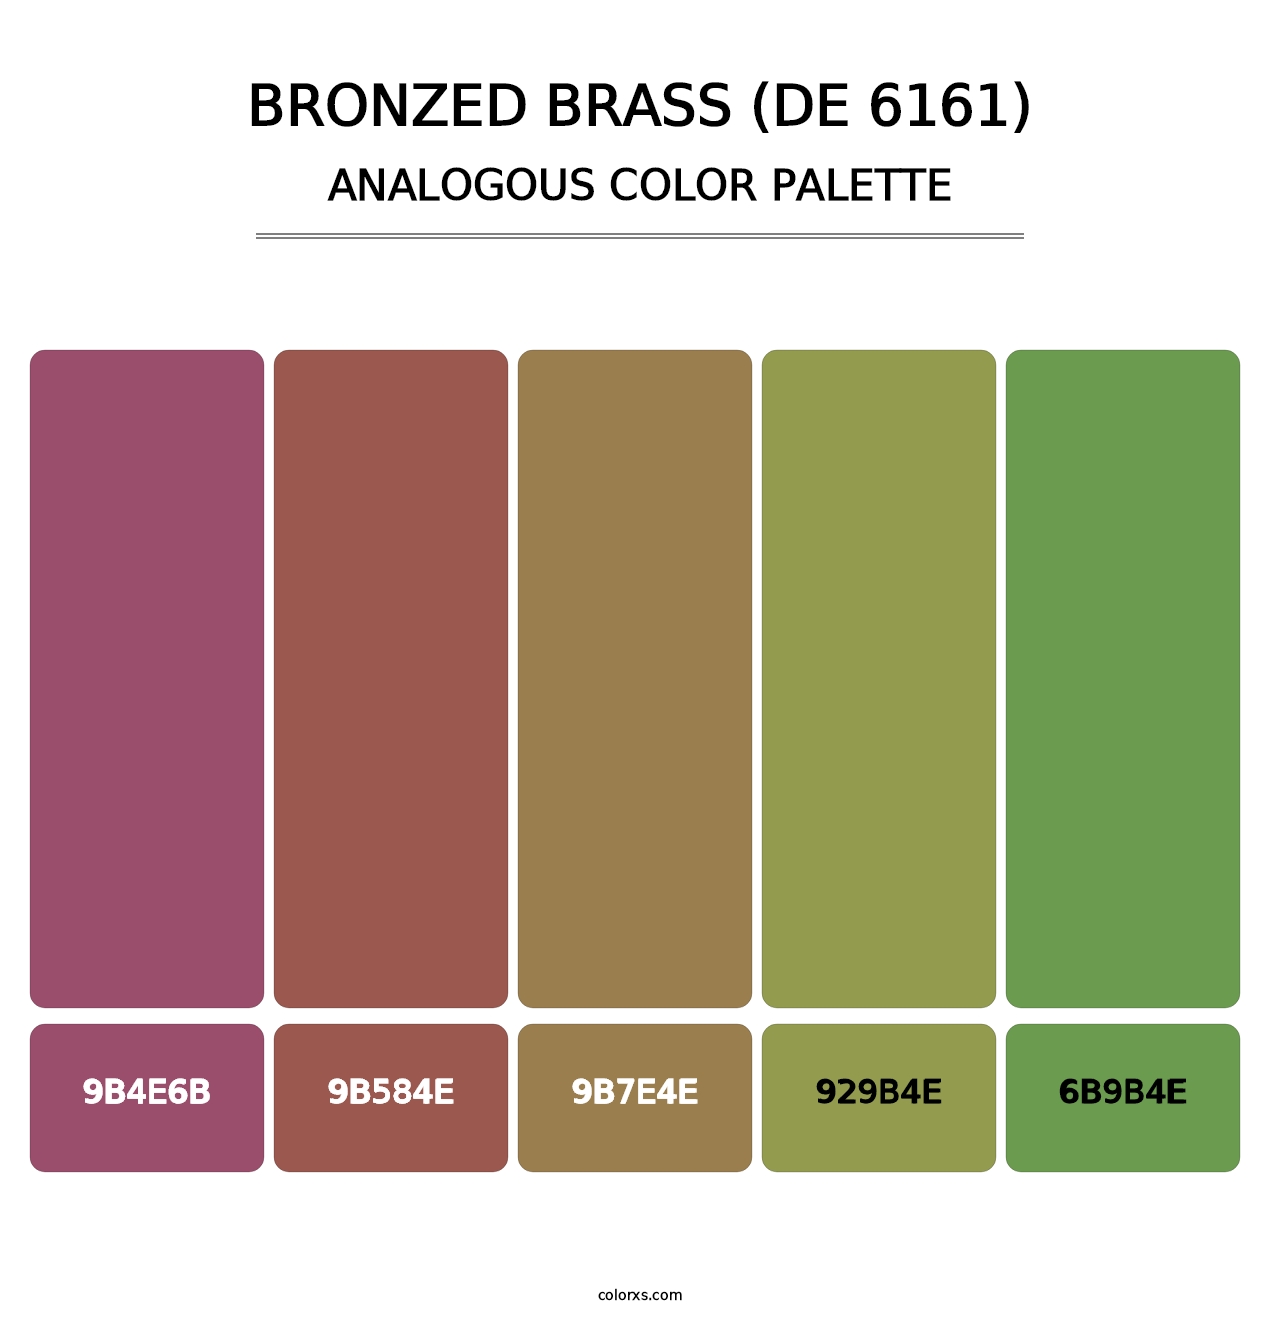 Bronzed Brass (DE 6161) - Analogous Color Palette